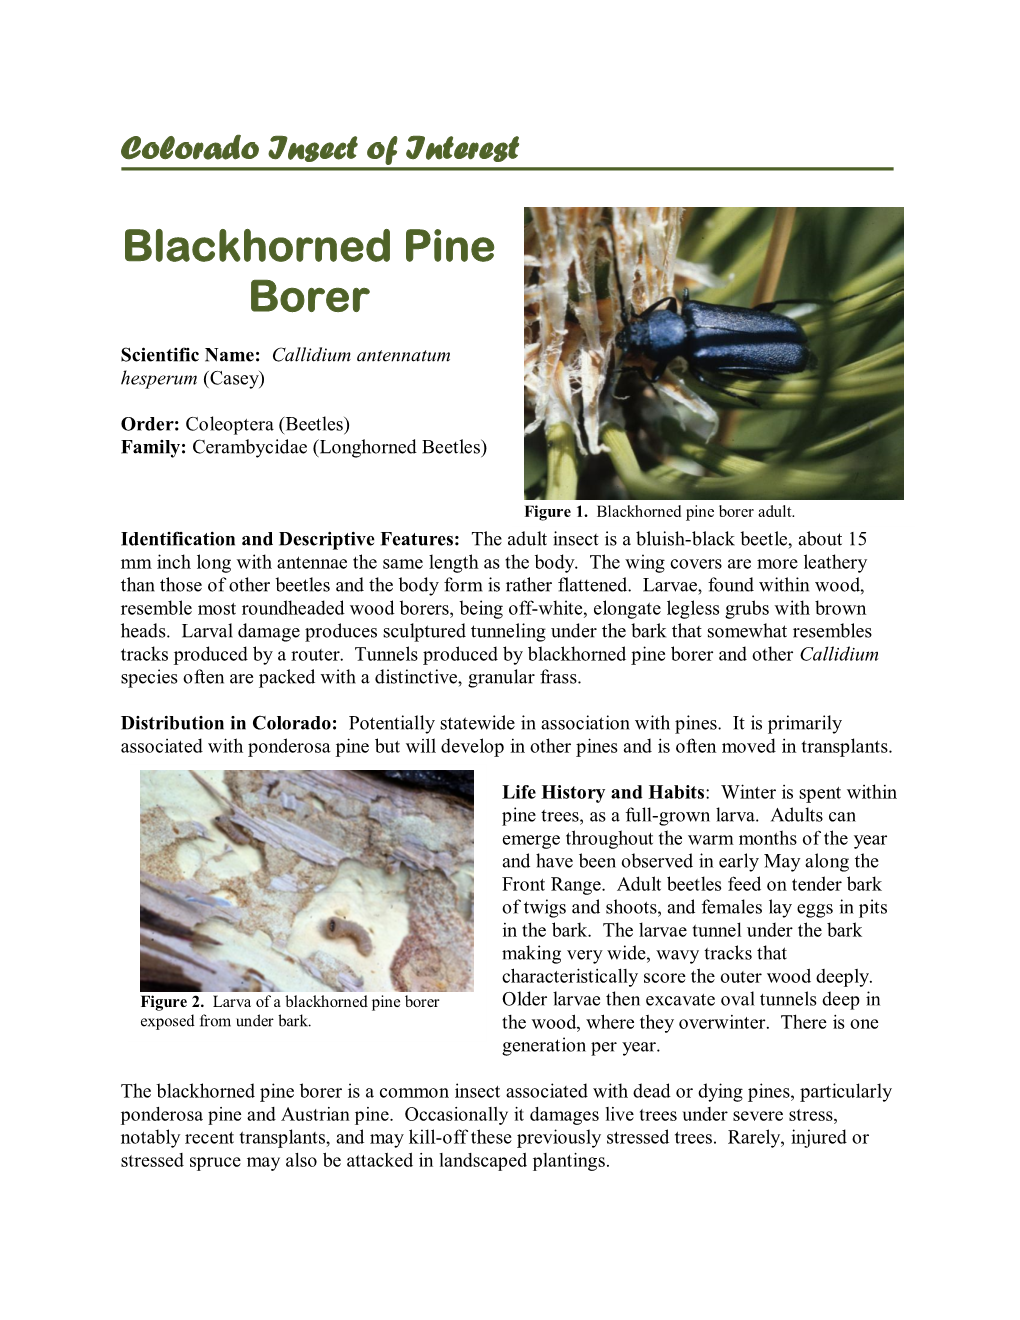 Blackhorned Pine Borer